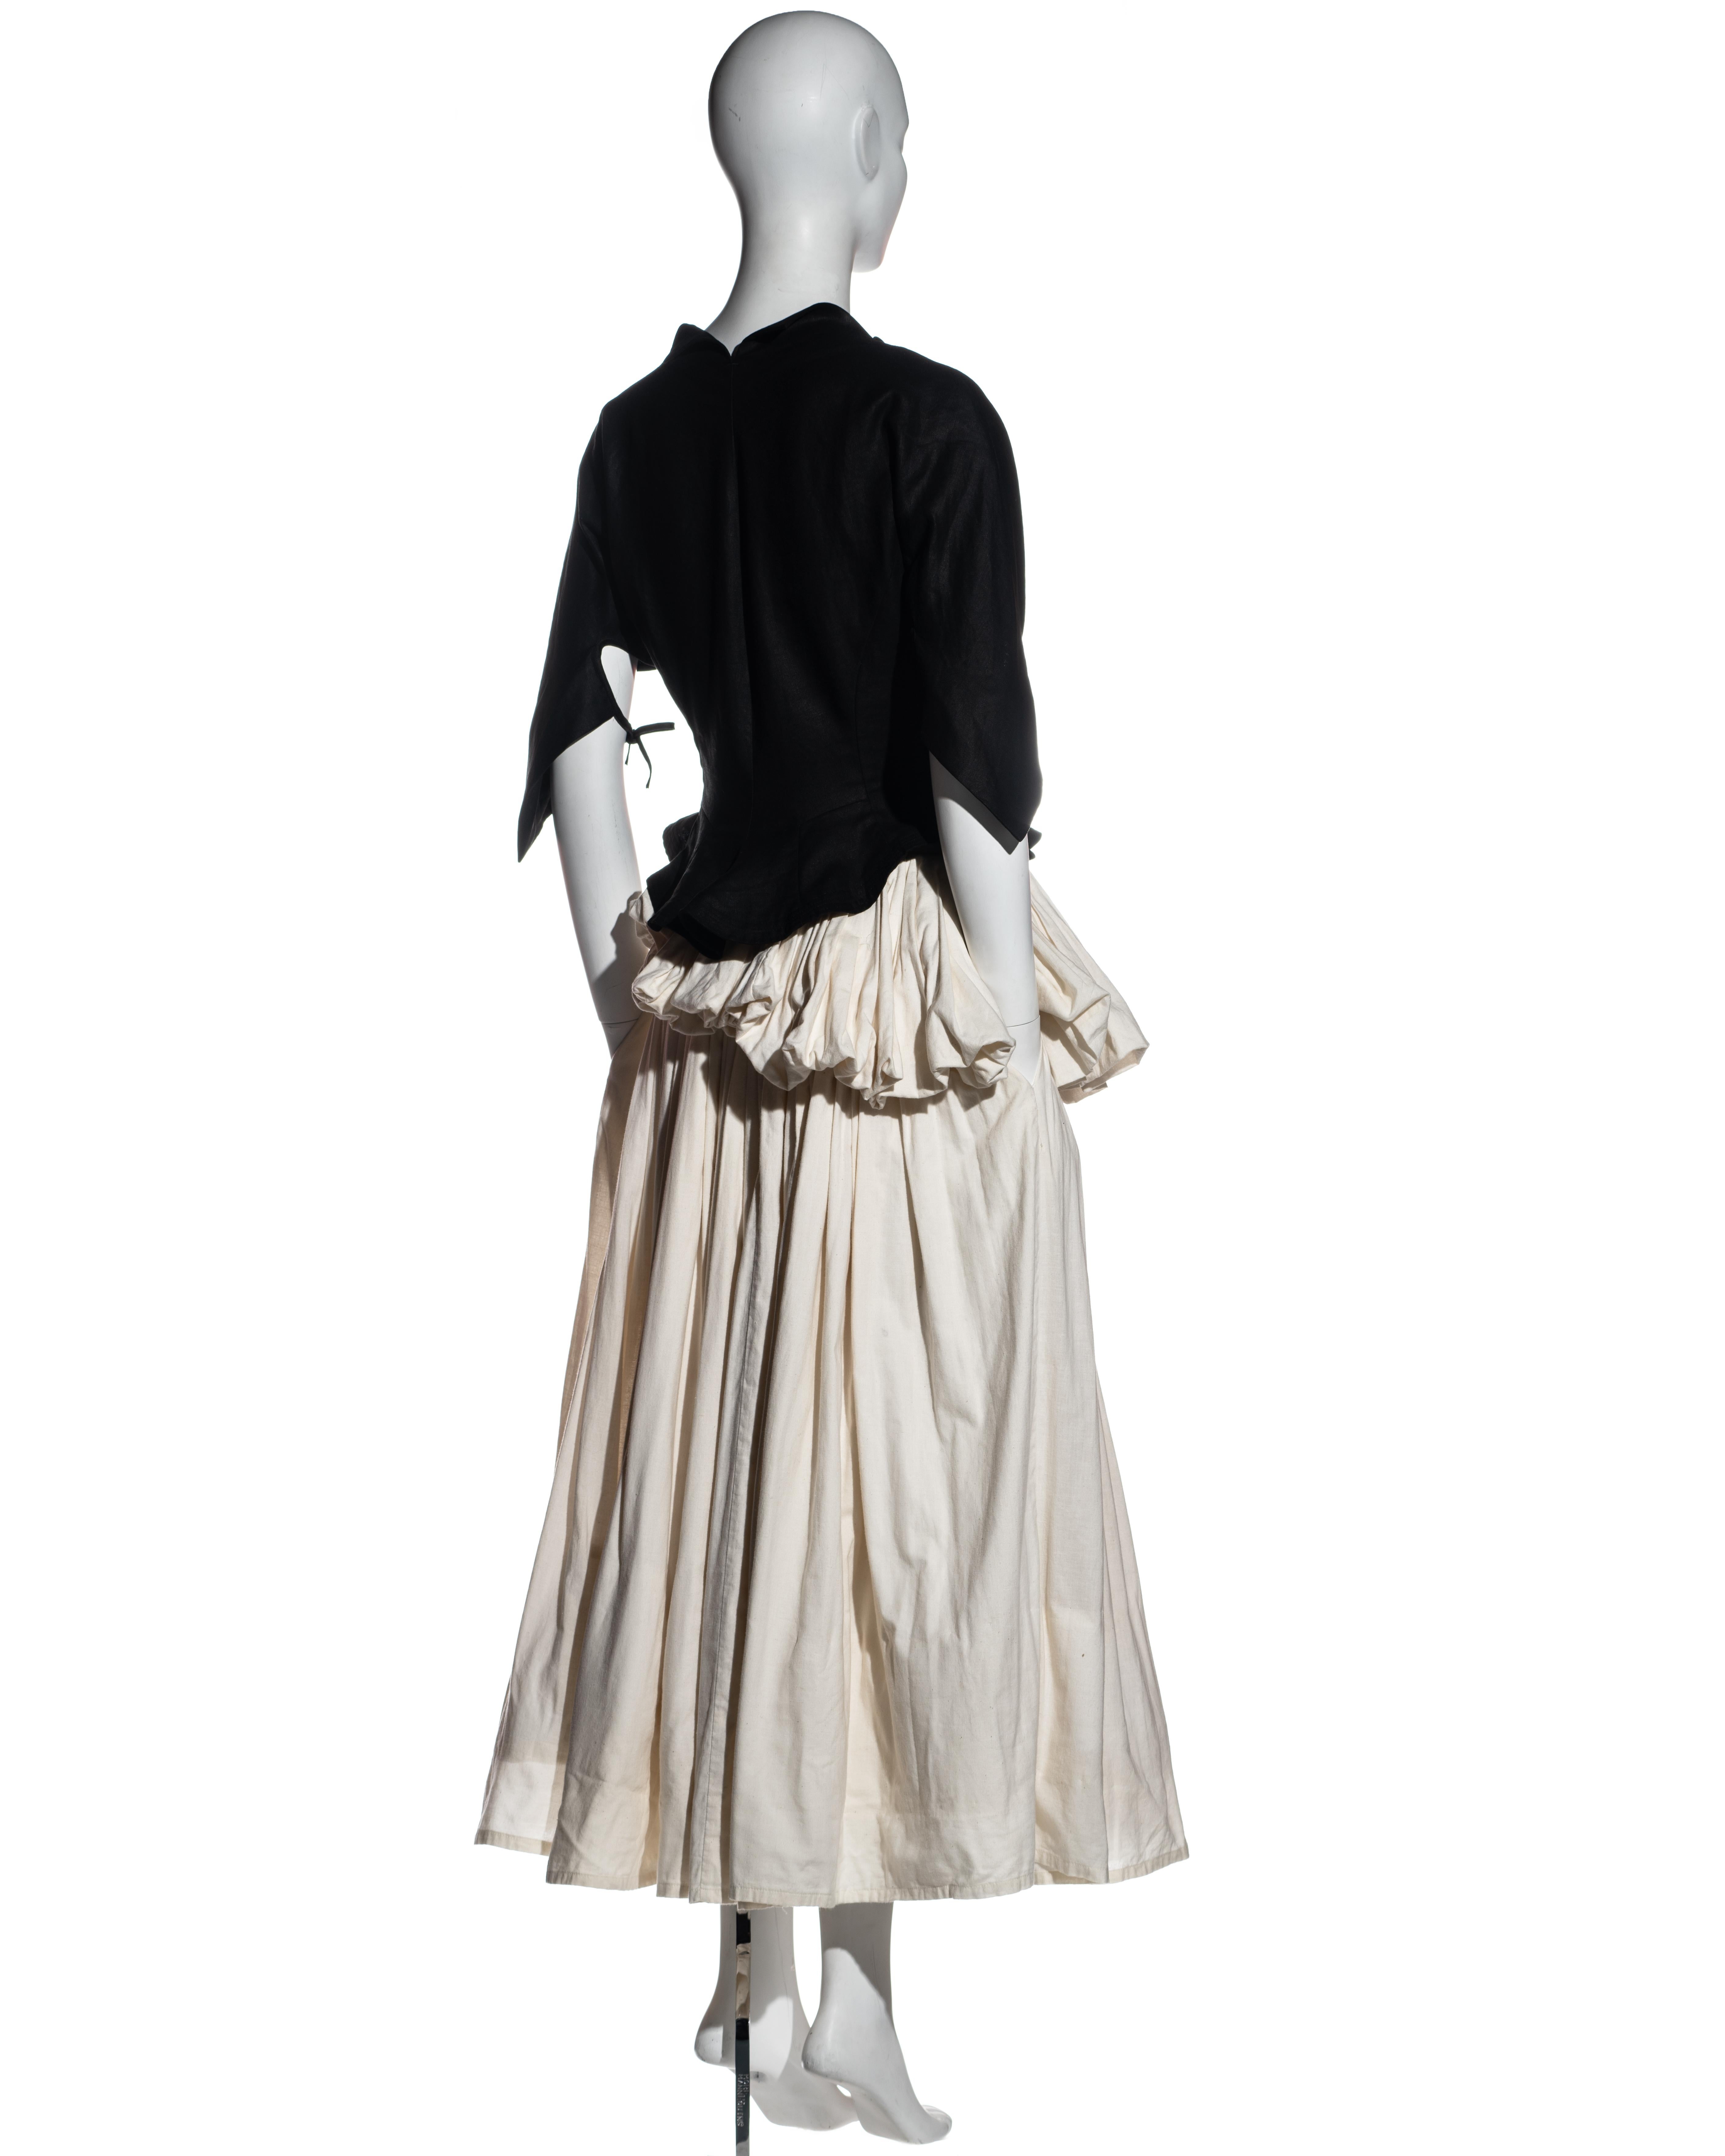 Yohji Yamamoto black and white cotton bustled skirt and jacket set, ss 2000 1